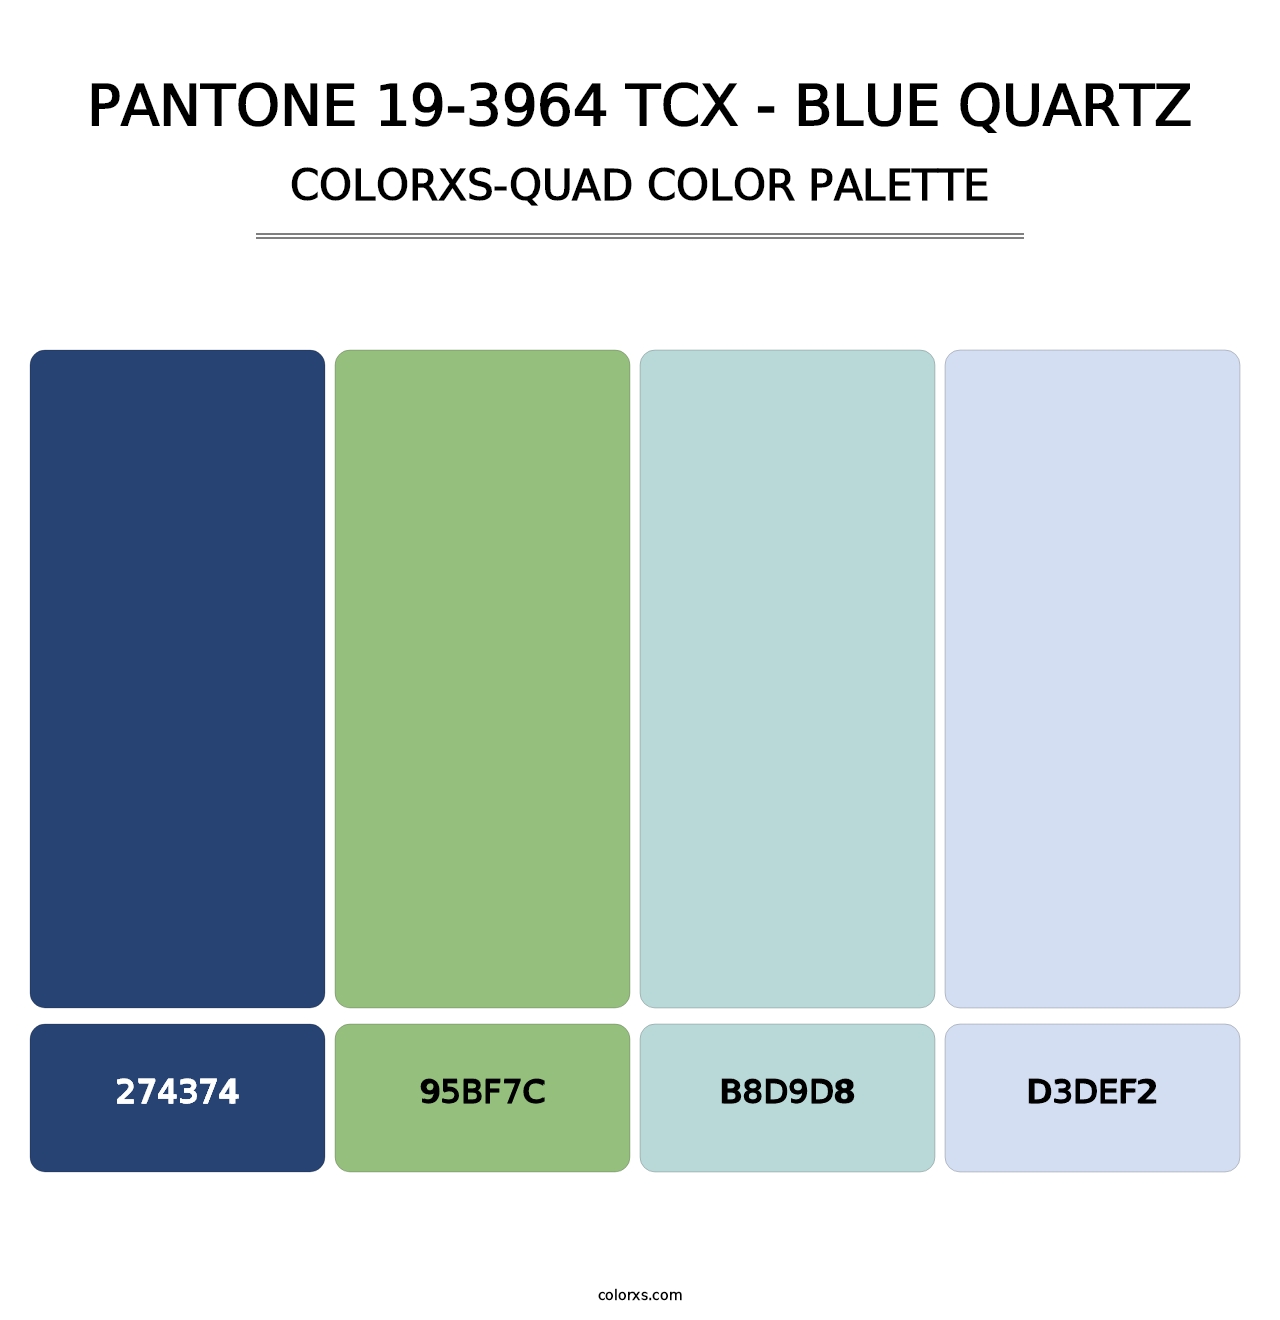 PANTONE 19-3964 TCX - Blue Quartz - Colorxs Quad Palette